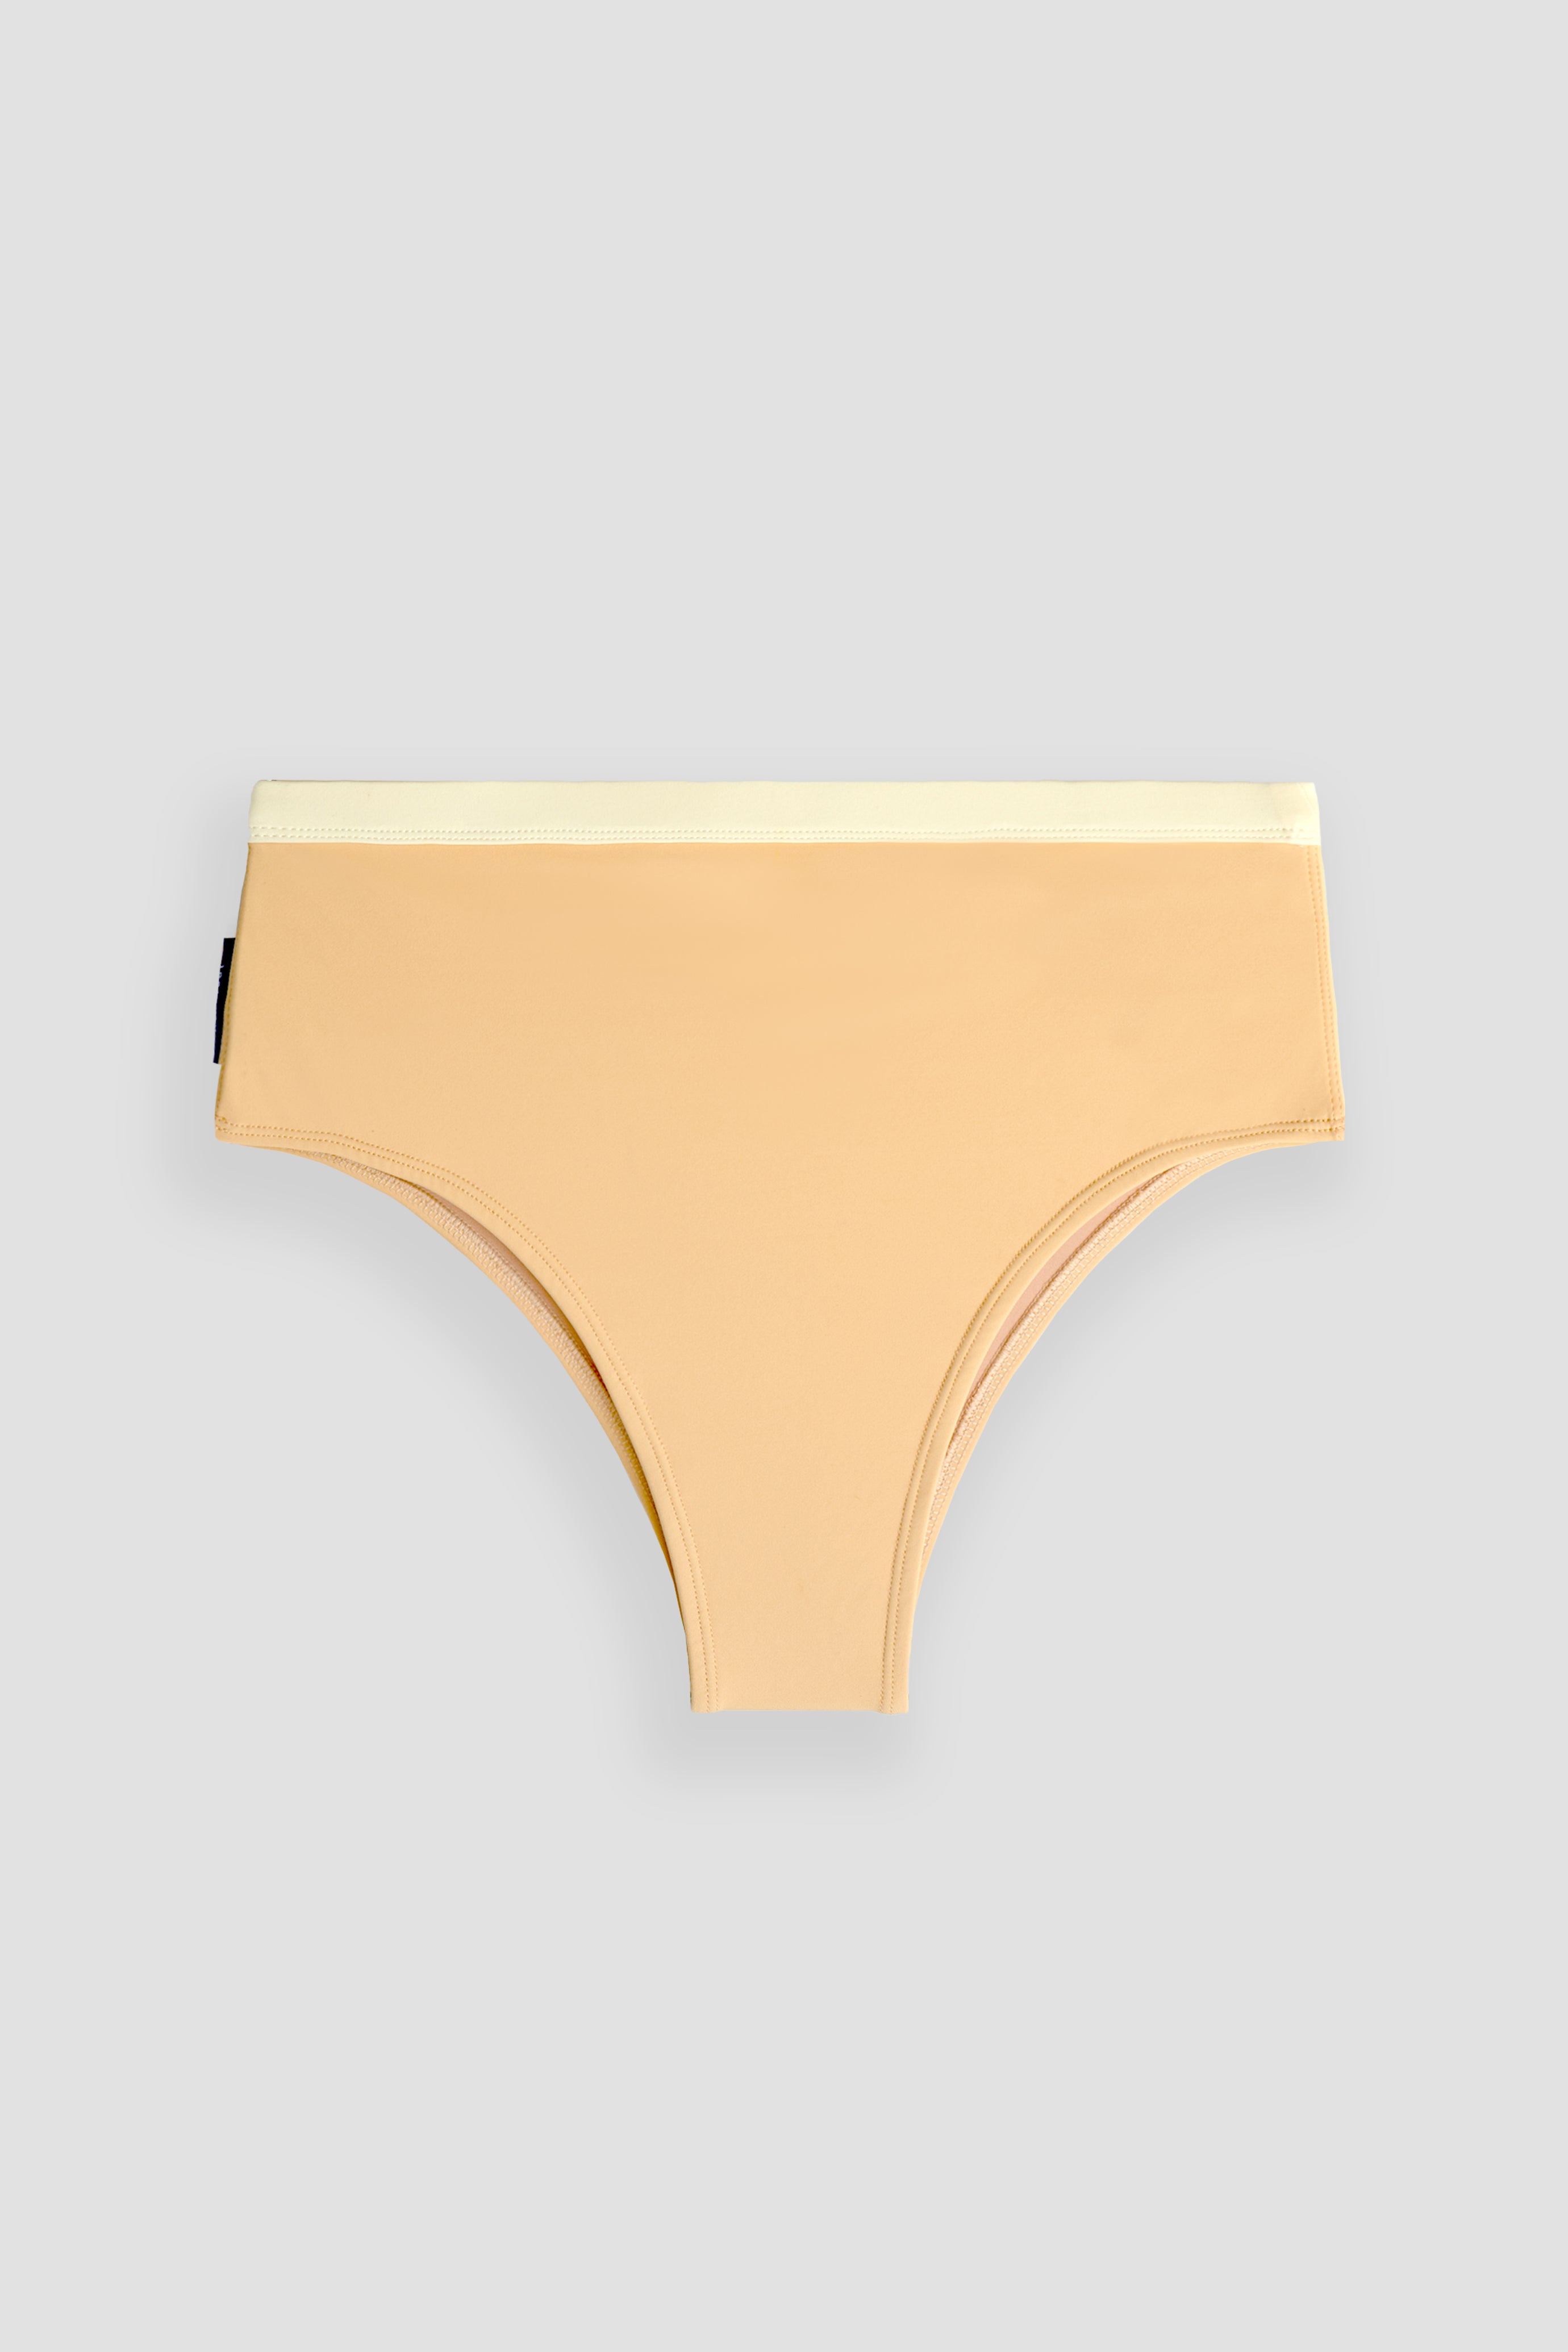 Rote Surf Bikini Bottom in Yellow Cream | Women Surfing Swimsuit | Ninefootstudio